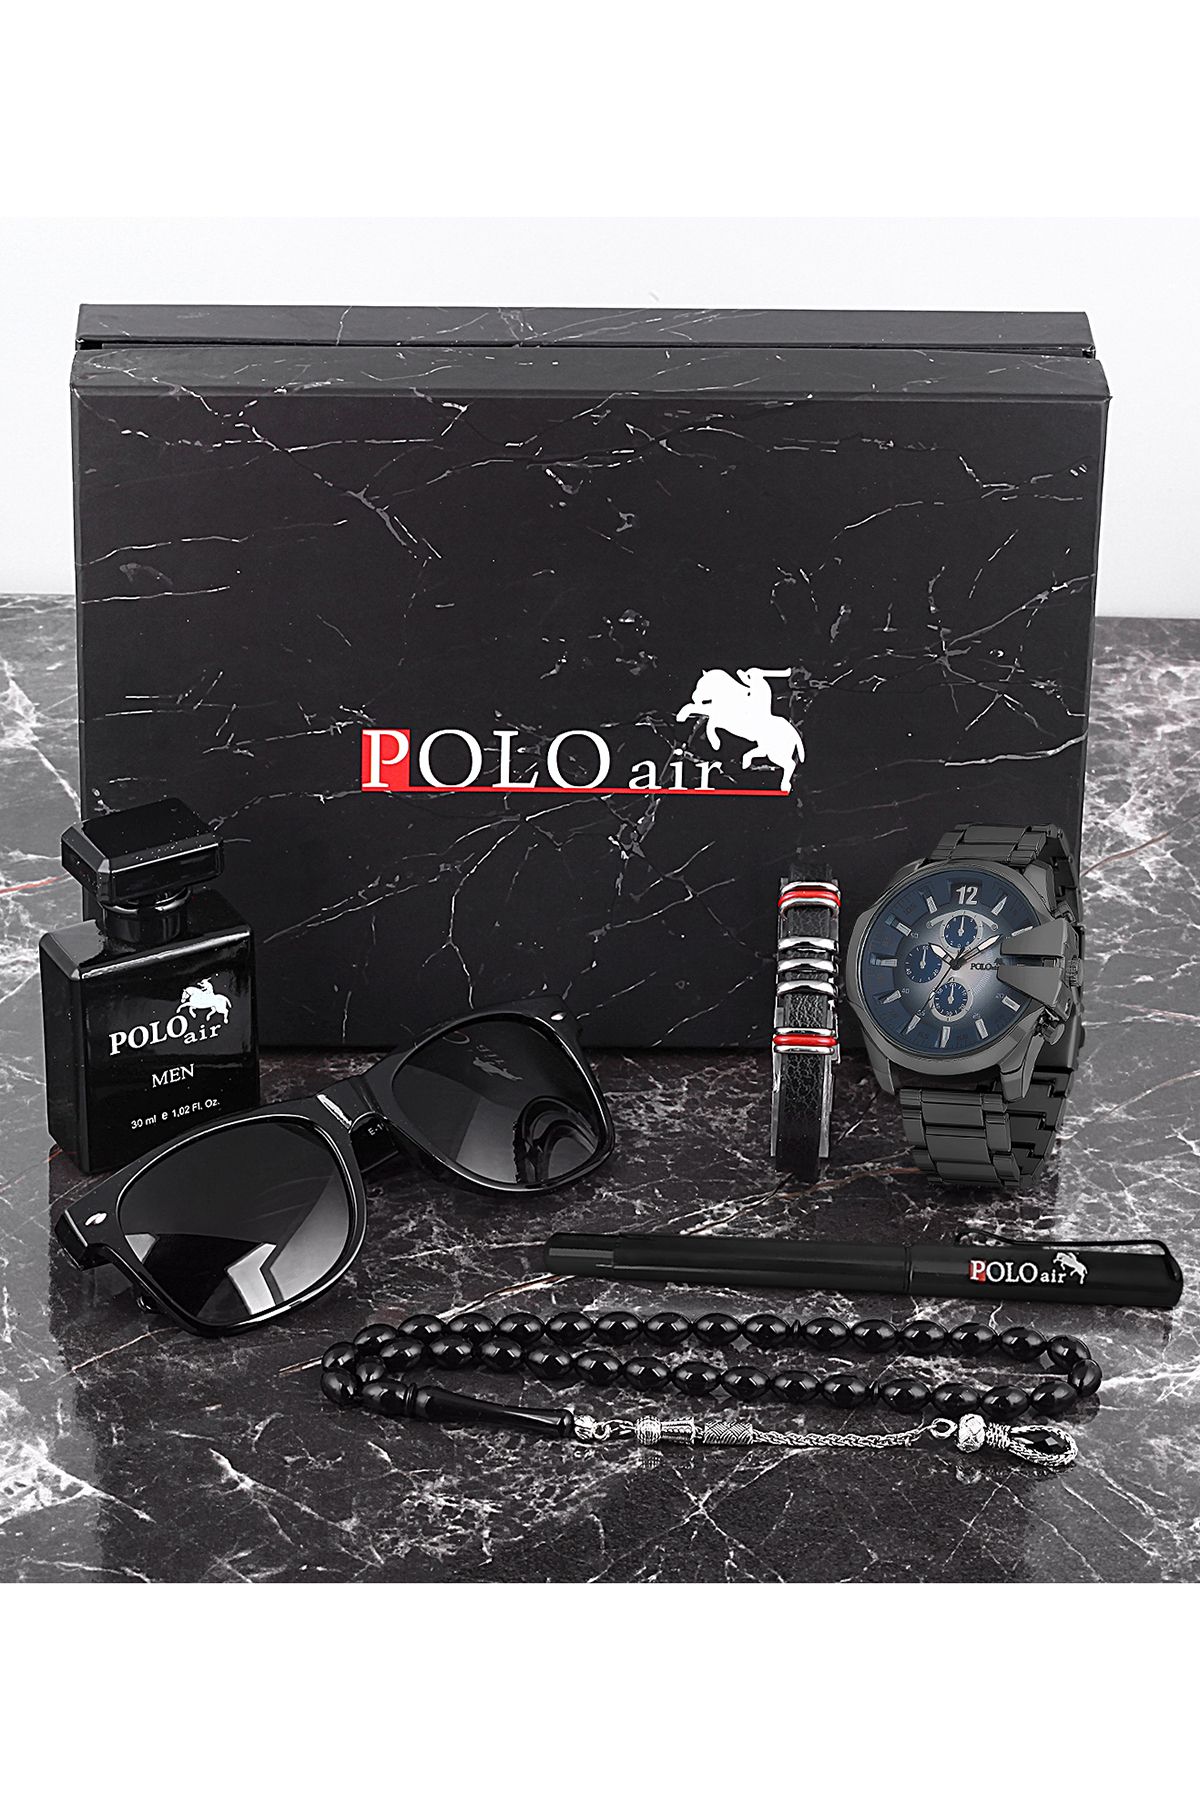 polo air Erkek Set Saat Gözlük Parfüm Tesbih Kalem Bileklik Özel Kutulu Siyah-Mavi Renk